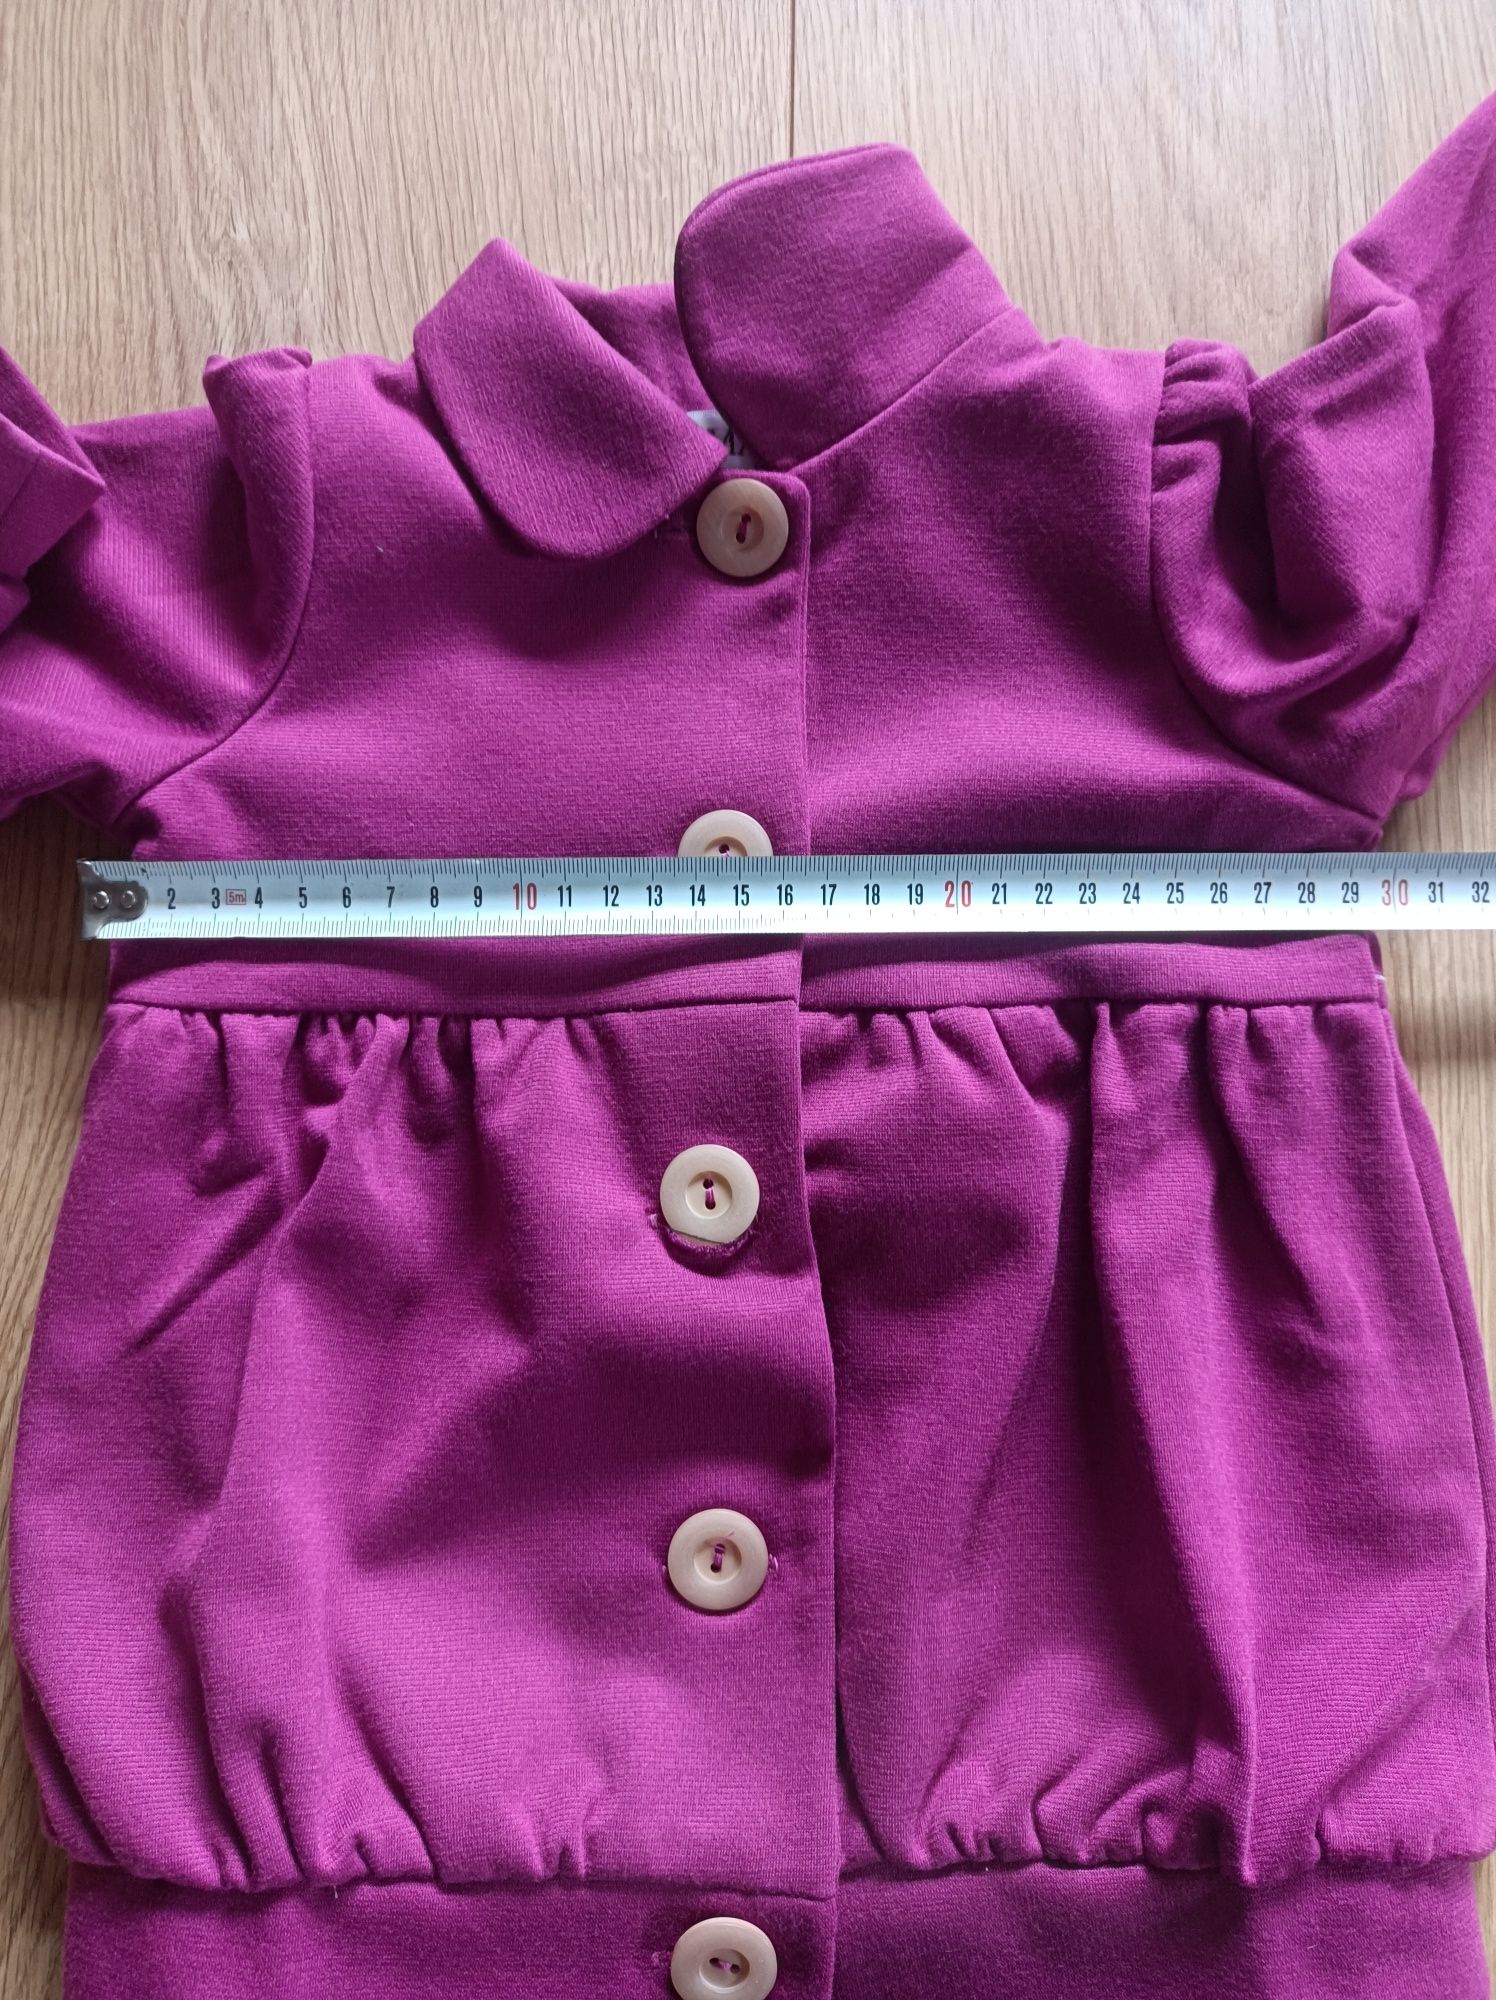 Bluza na podszewce kurtka dla dziewczynki fuksja rozmiar 86